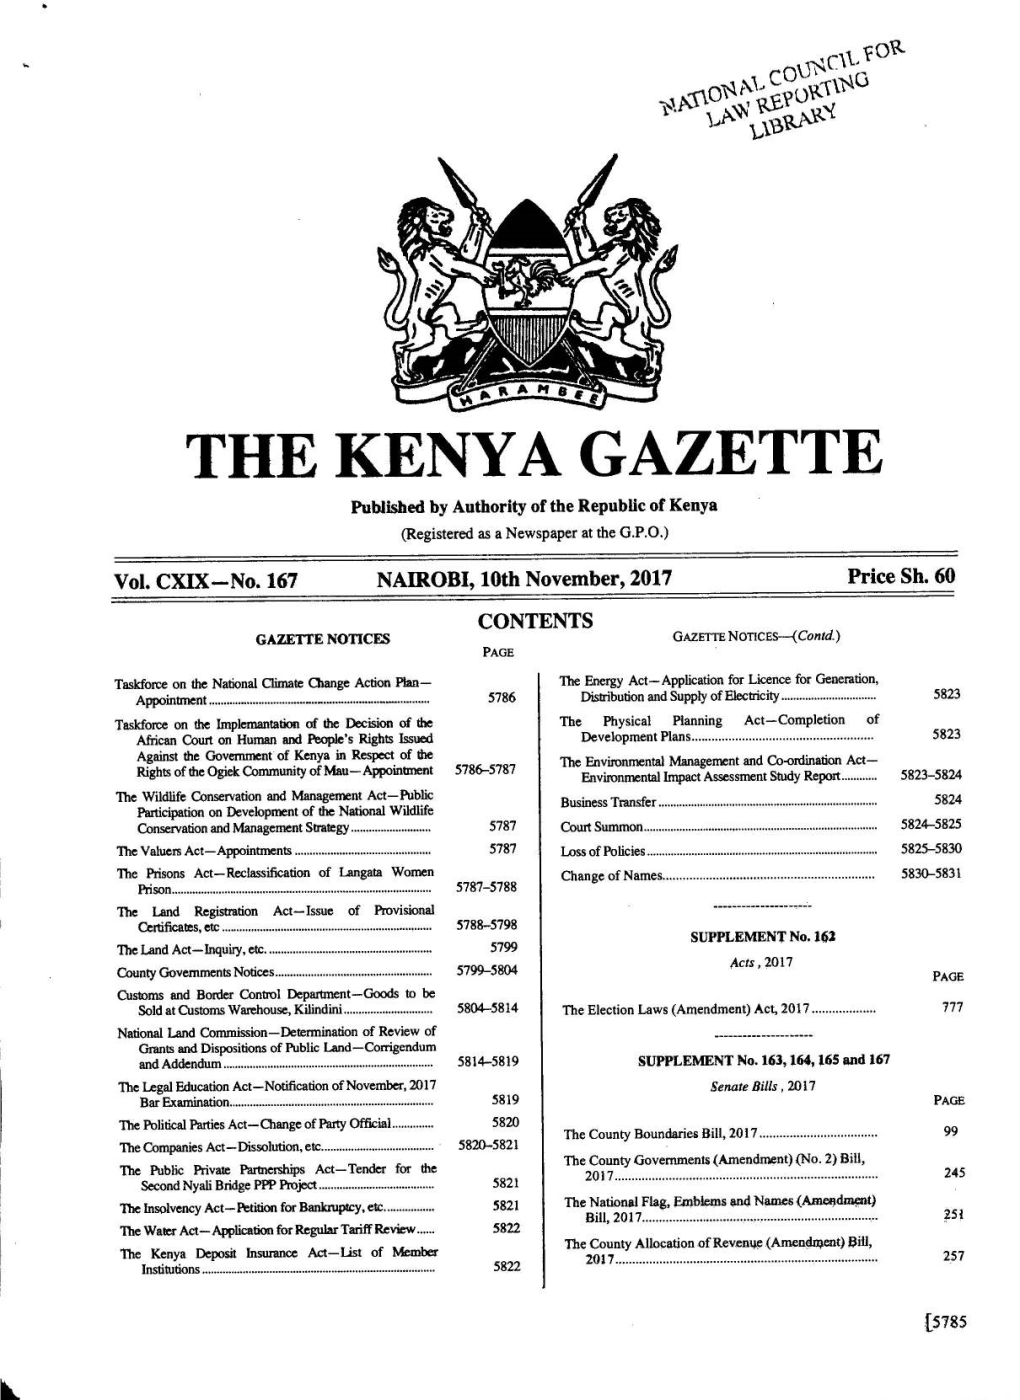 The Kenya Gazette